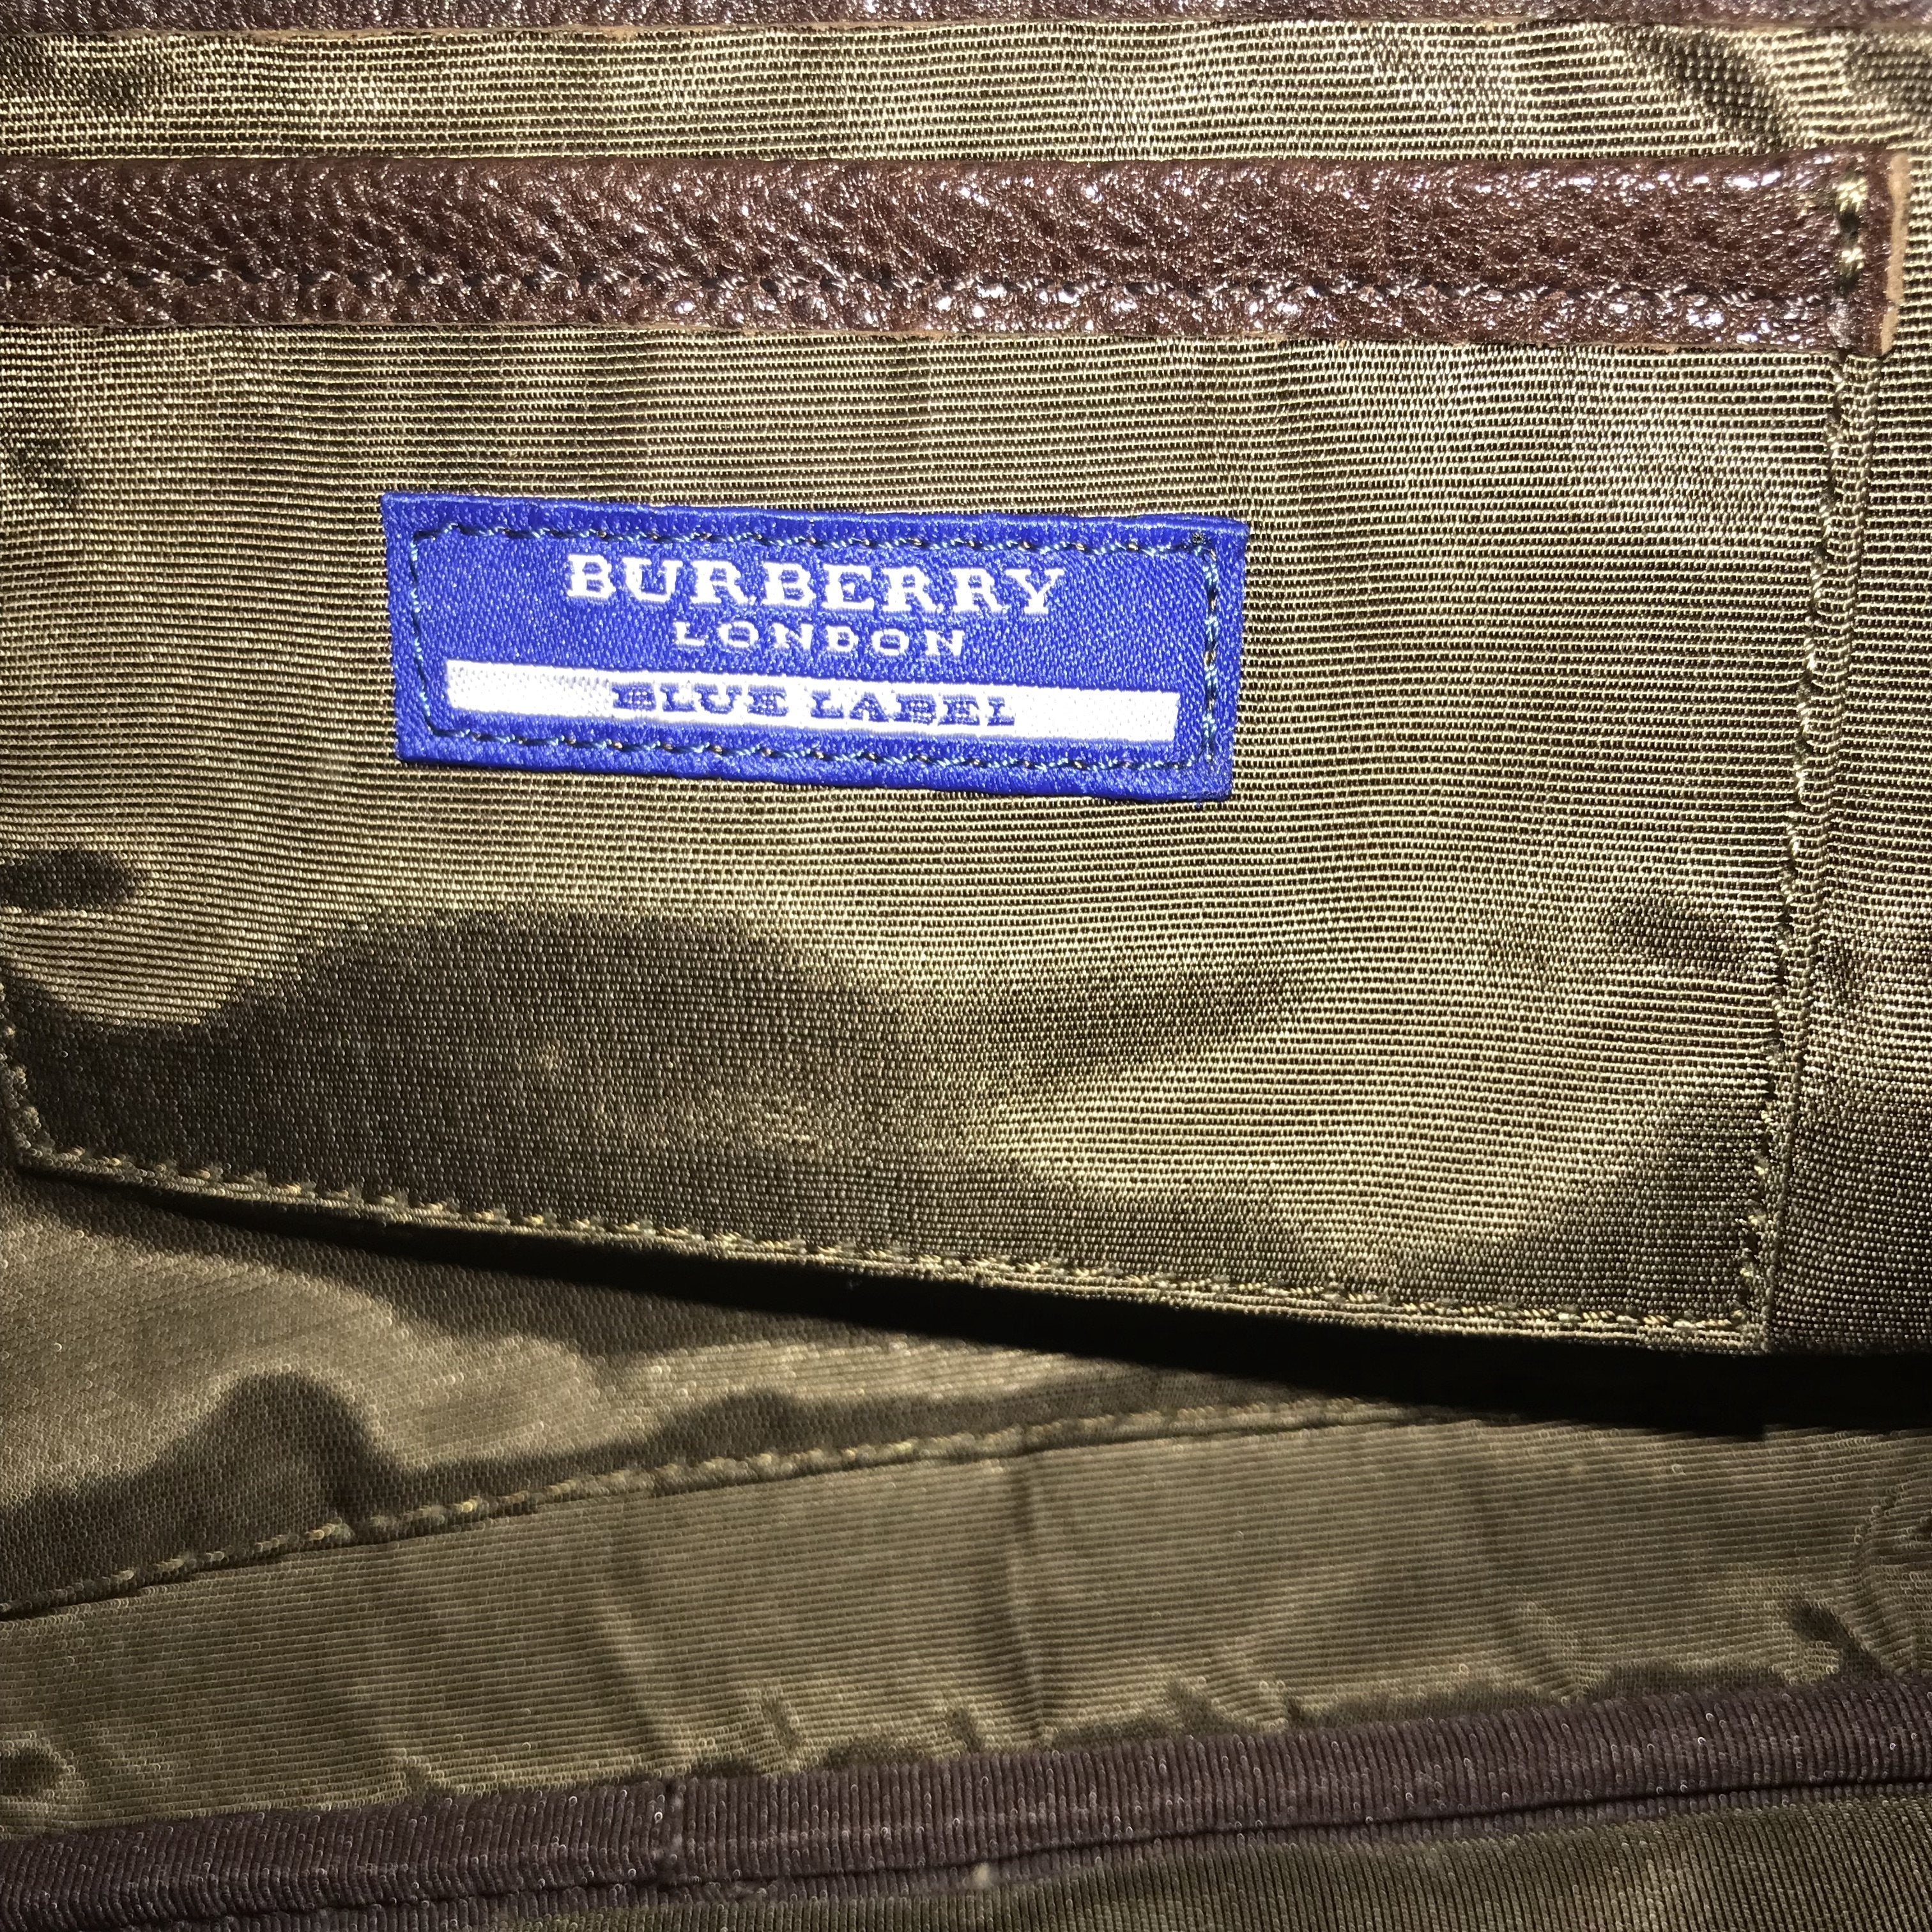 Burberry blue label pink - Gem